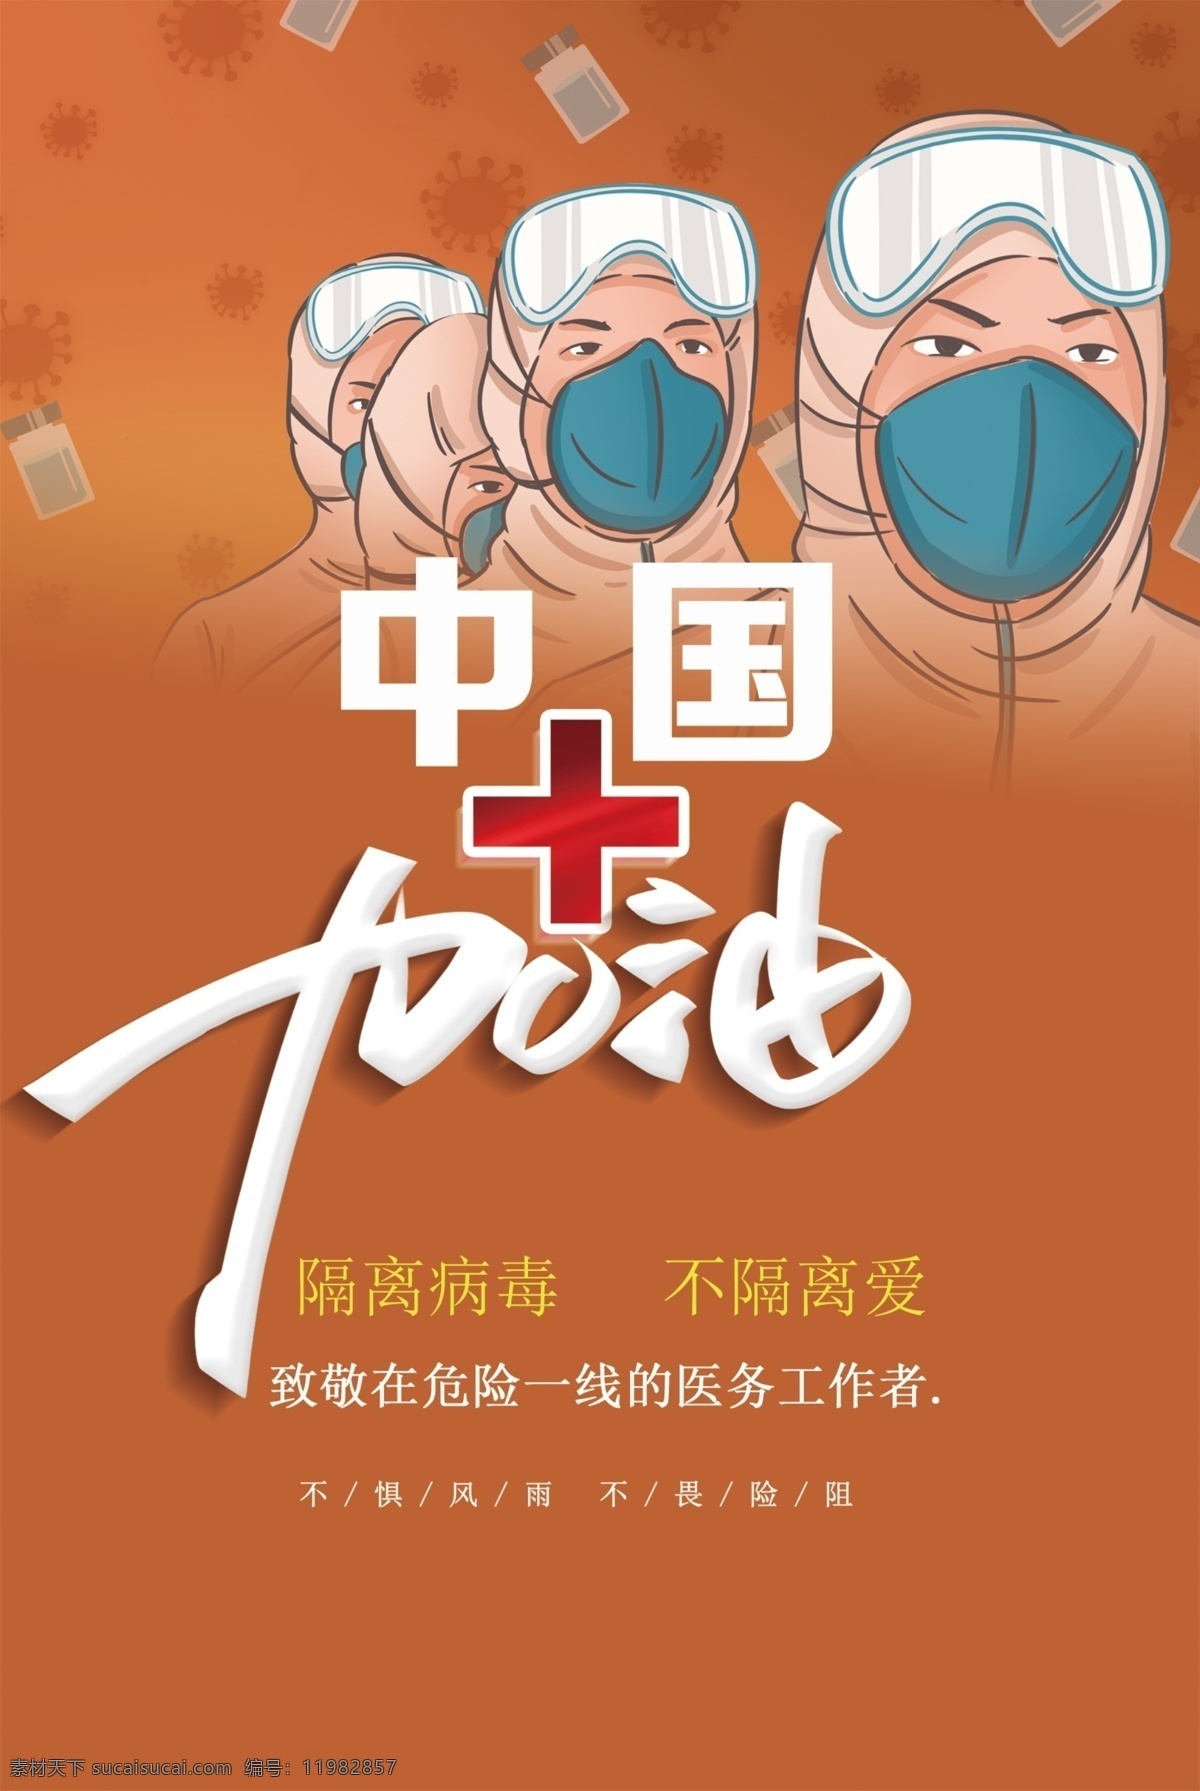 中国加油 抗击疫情 疫情设计图 宣传图